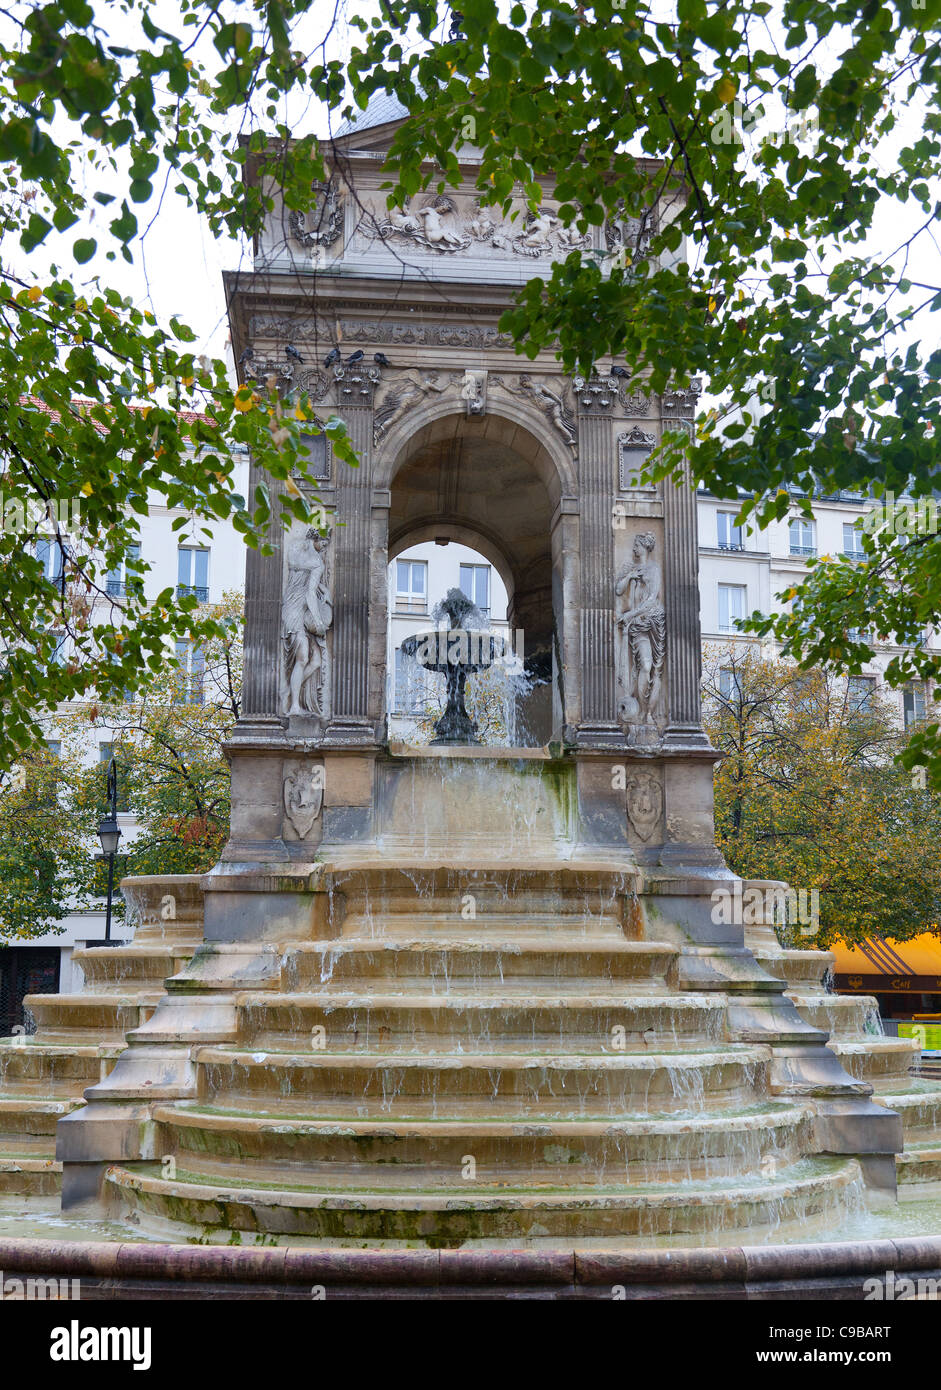 The Fontaine des Innocents, Paris, France Stock Photo